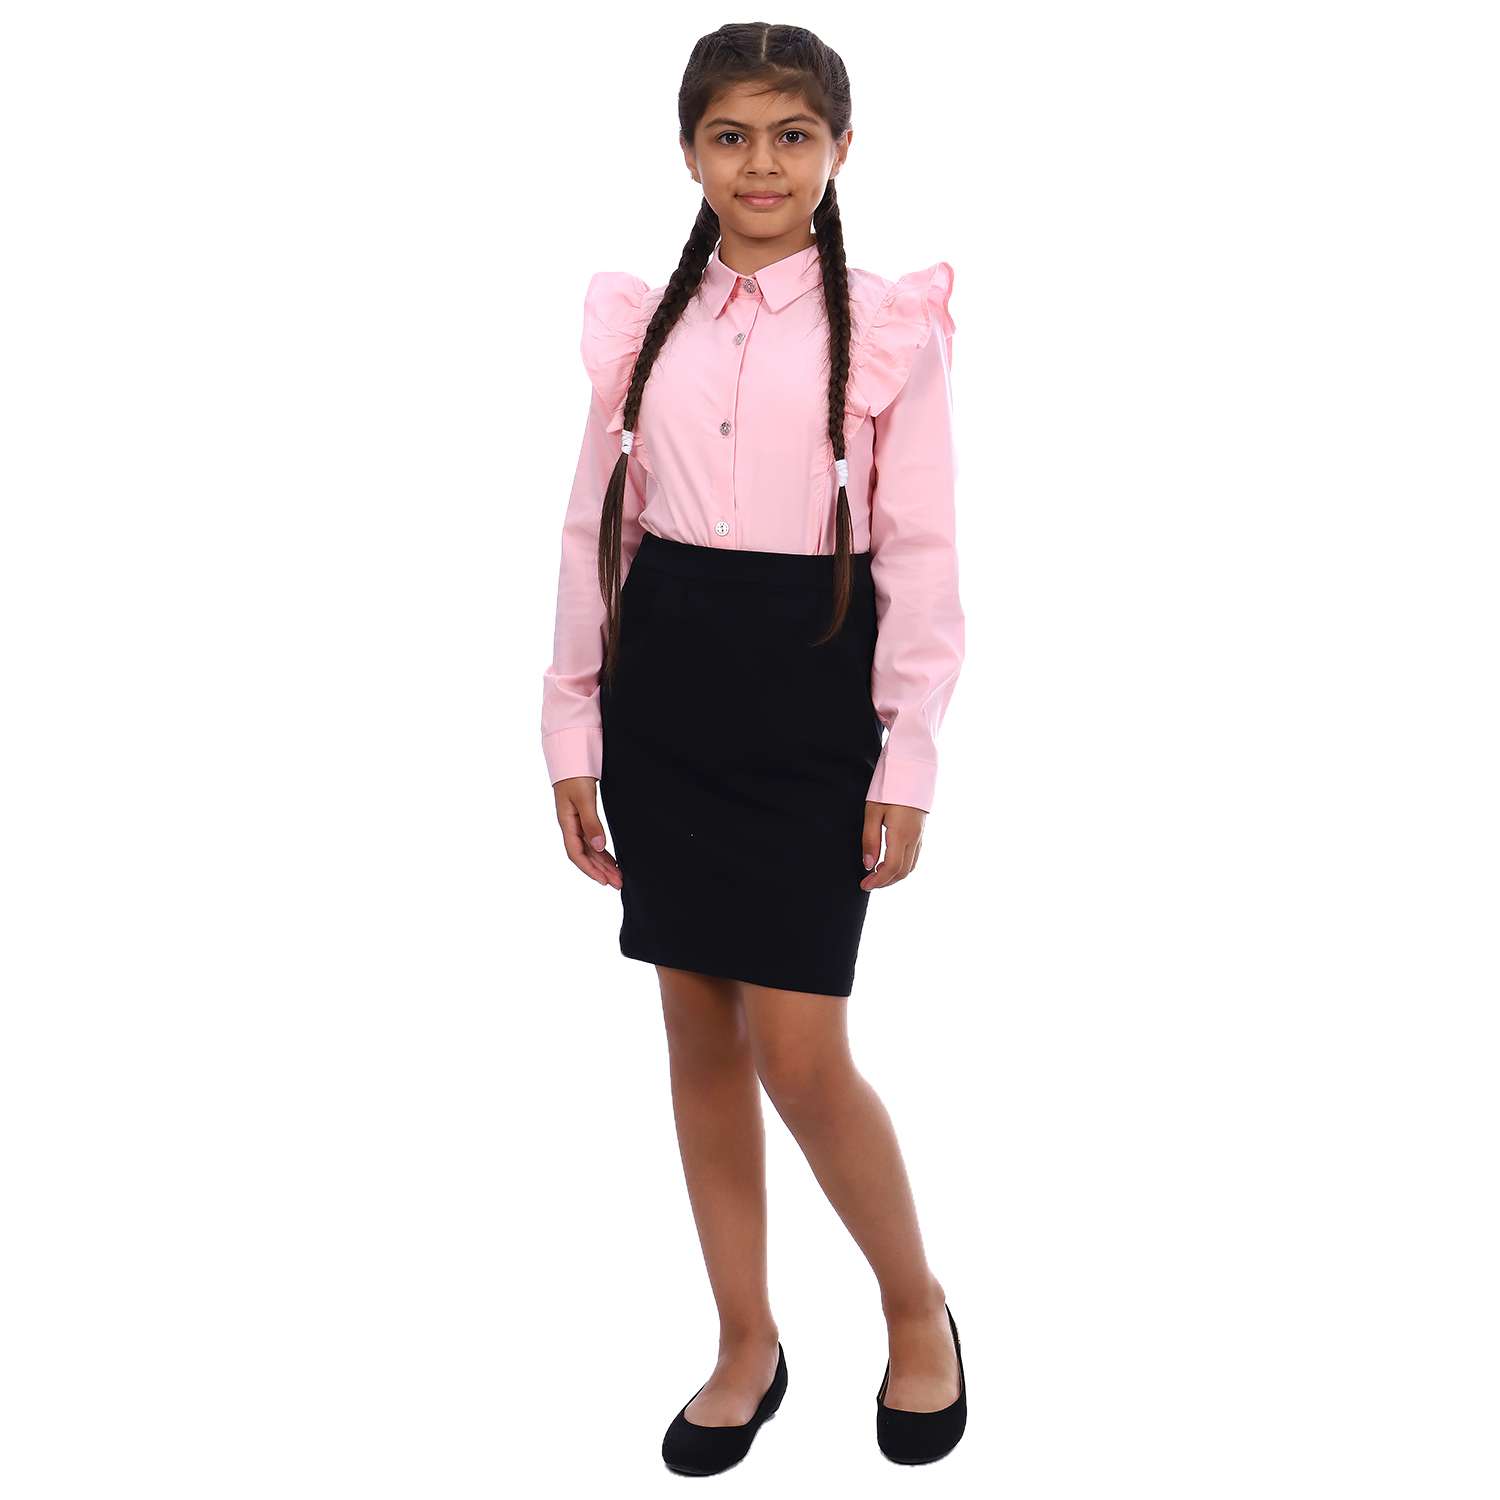 Блузка Детская Одежда BL-11000/розовый - фото 2